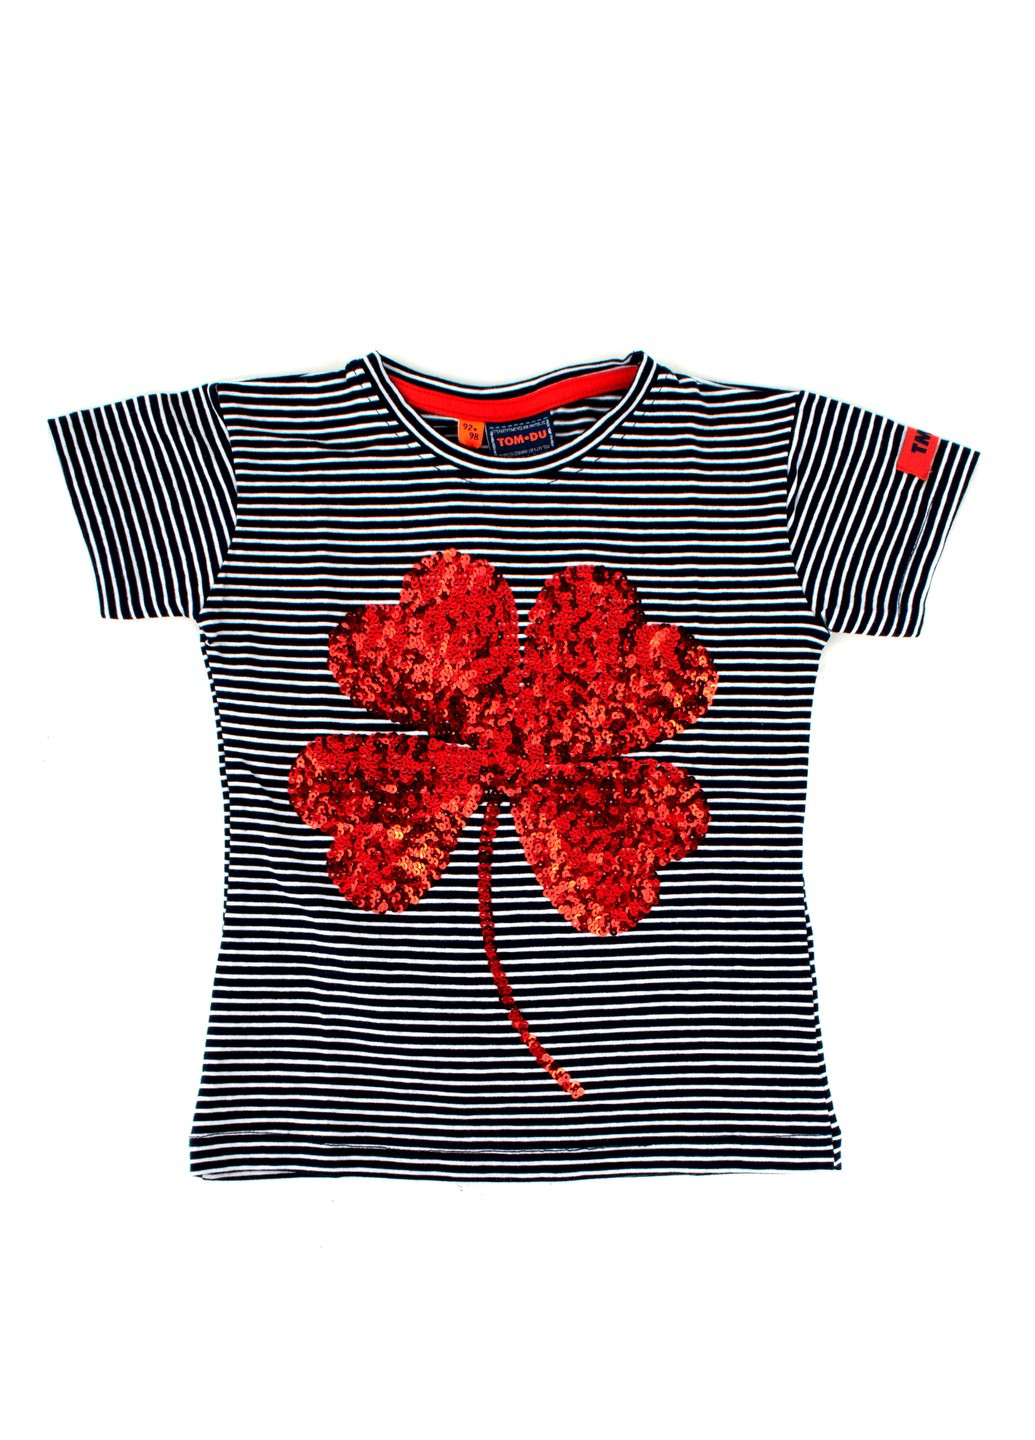 Червона футболка на дівчинку смугаста tom-du з паєтками TOM DU